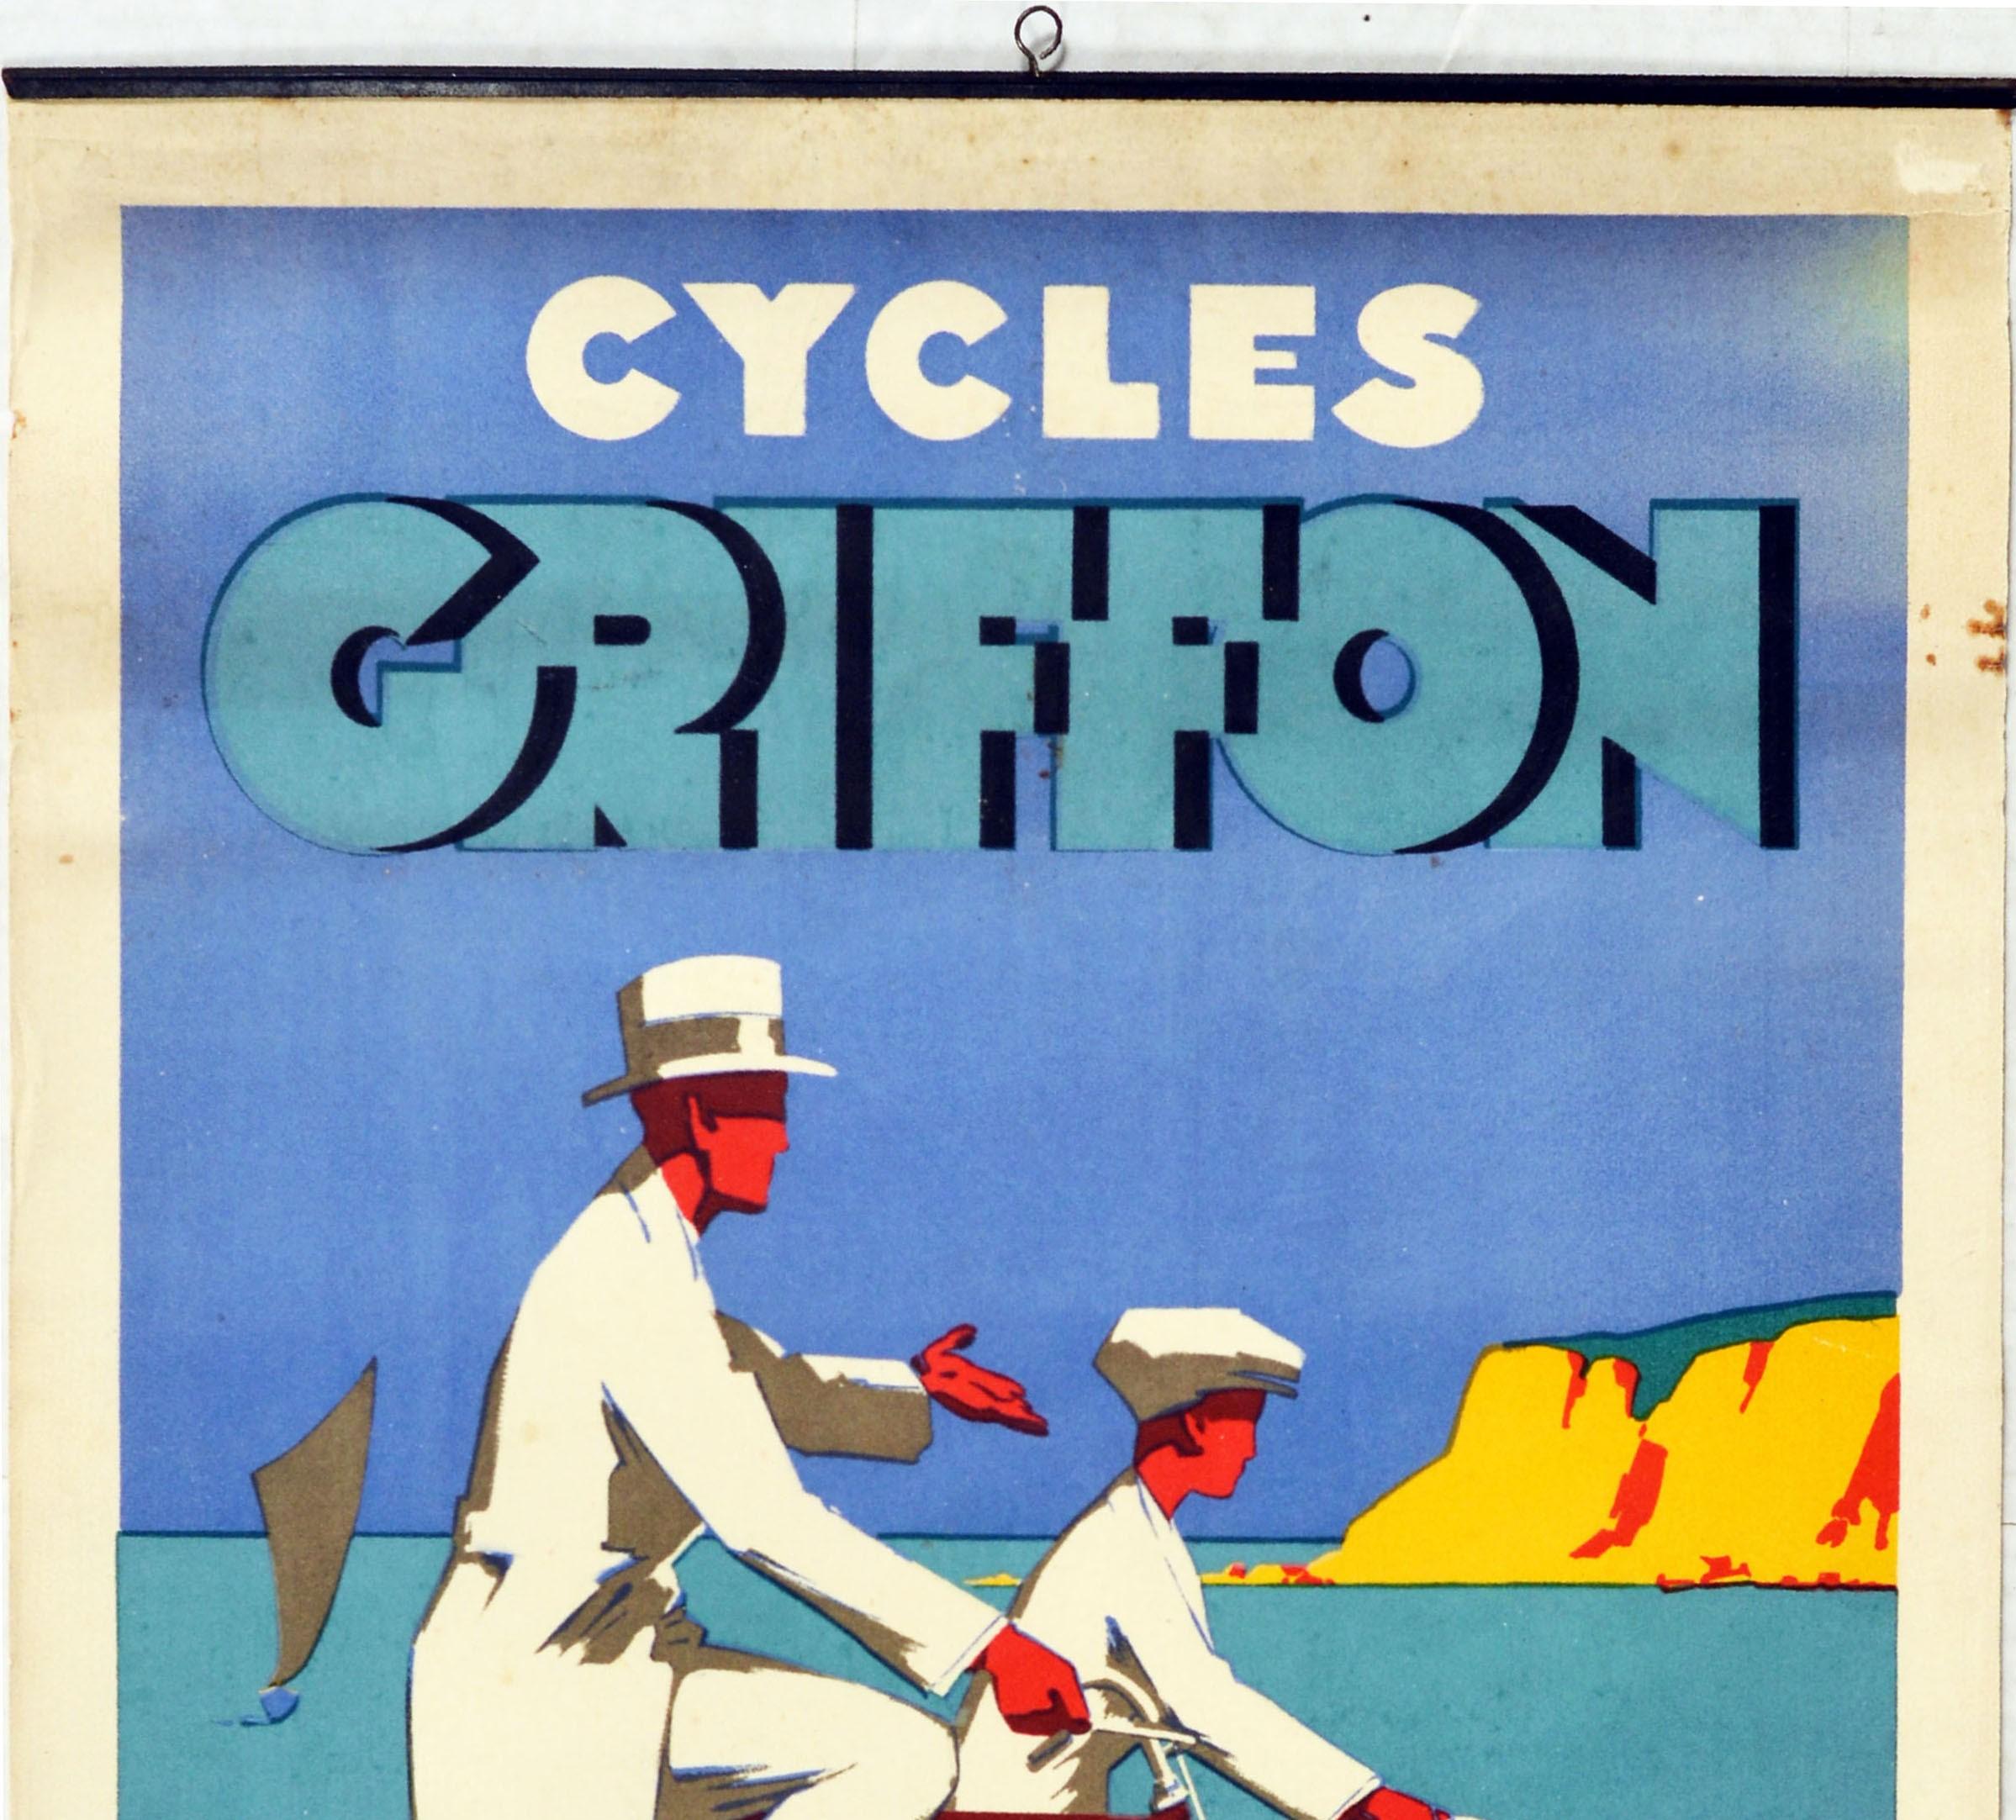 Originales Werbeplakat für Cycles Griffon mit einem großartigen Art-Deco-Design, das einen Mann in weißer Hose und Hut und einen Jungen in weißen Shorts und einer Mütze zeigt, die auf ihren schicken Fahrrädern an der Küste entlang fahren, das ruhige